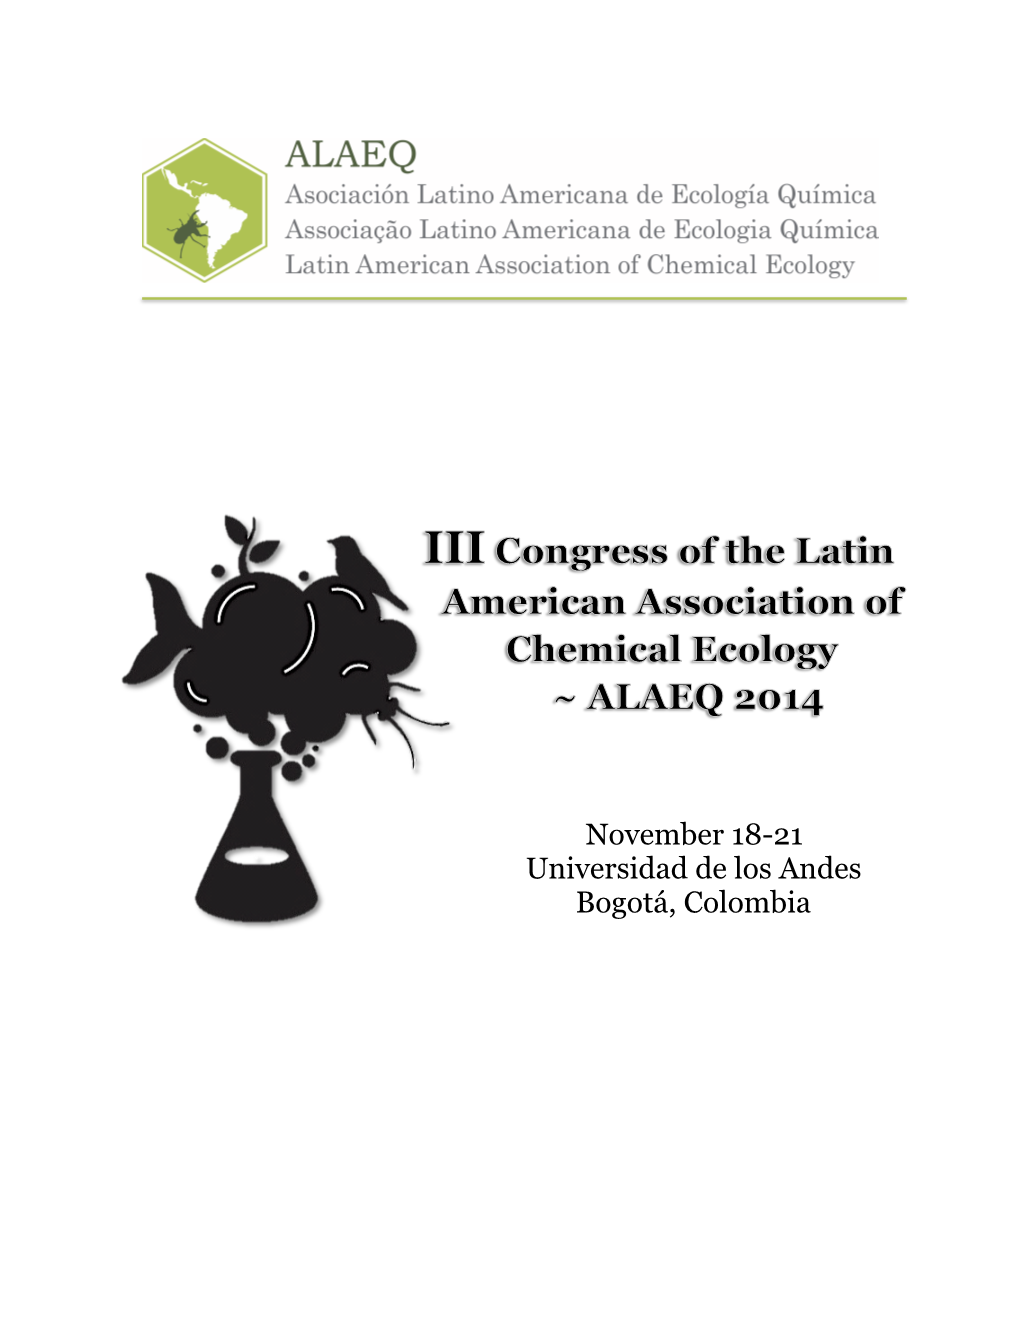 November 18-21 Universidad De Los Andes Bogotá, Colombia